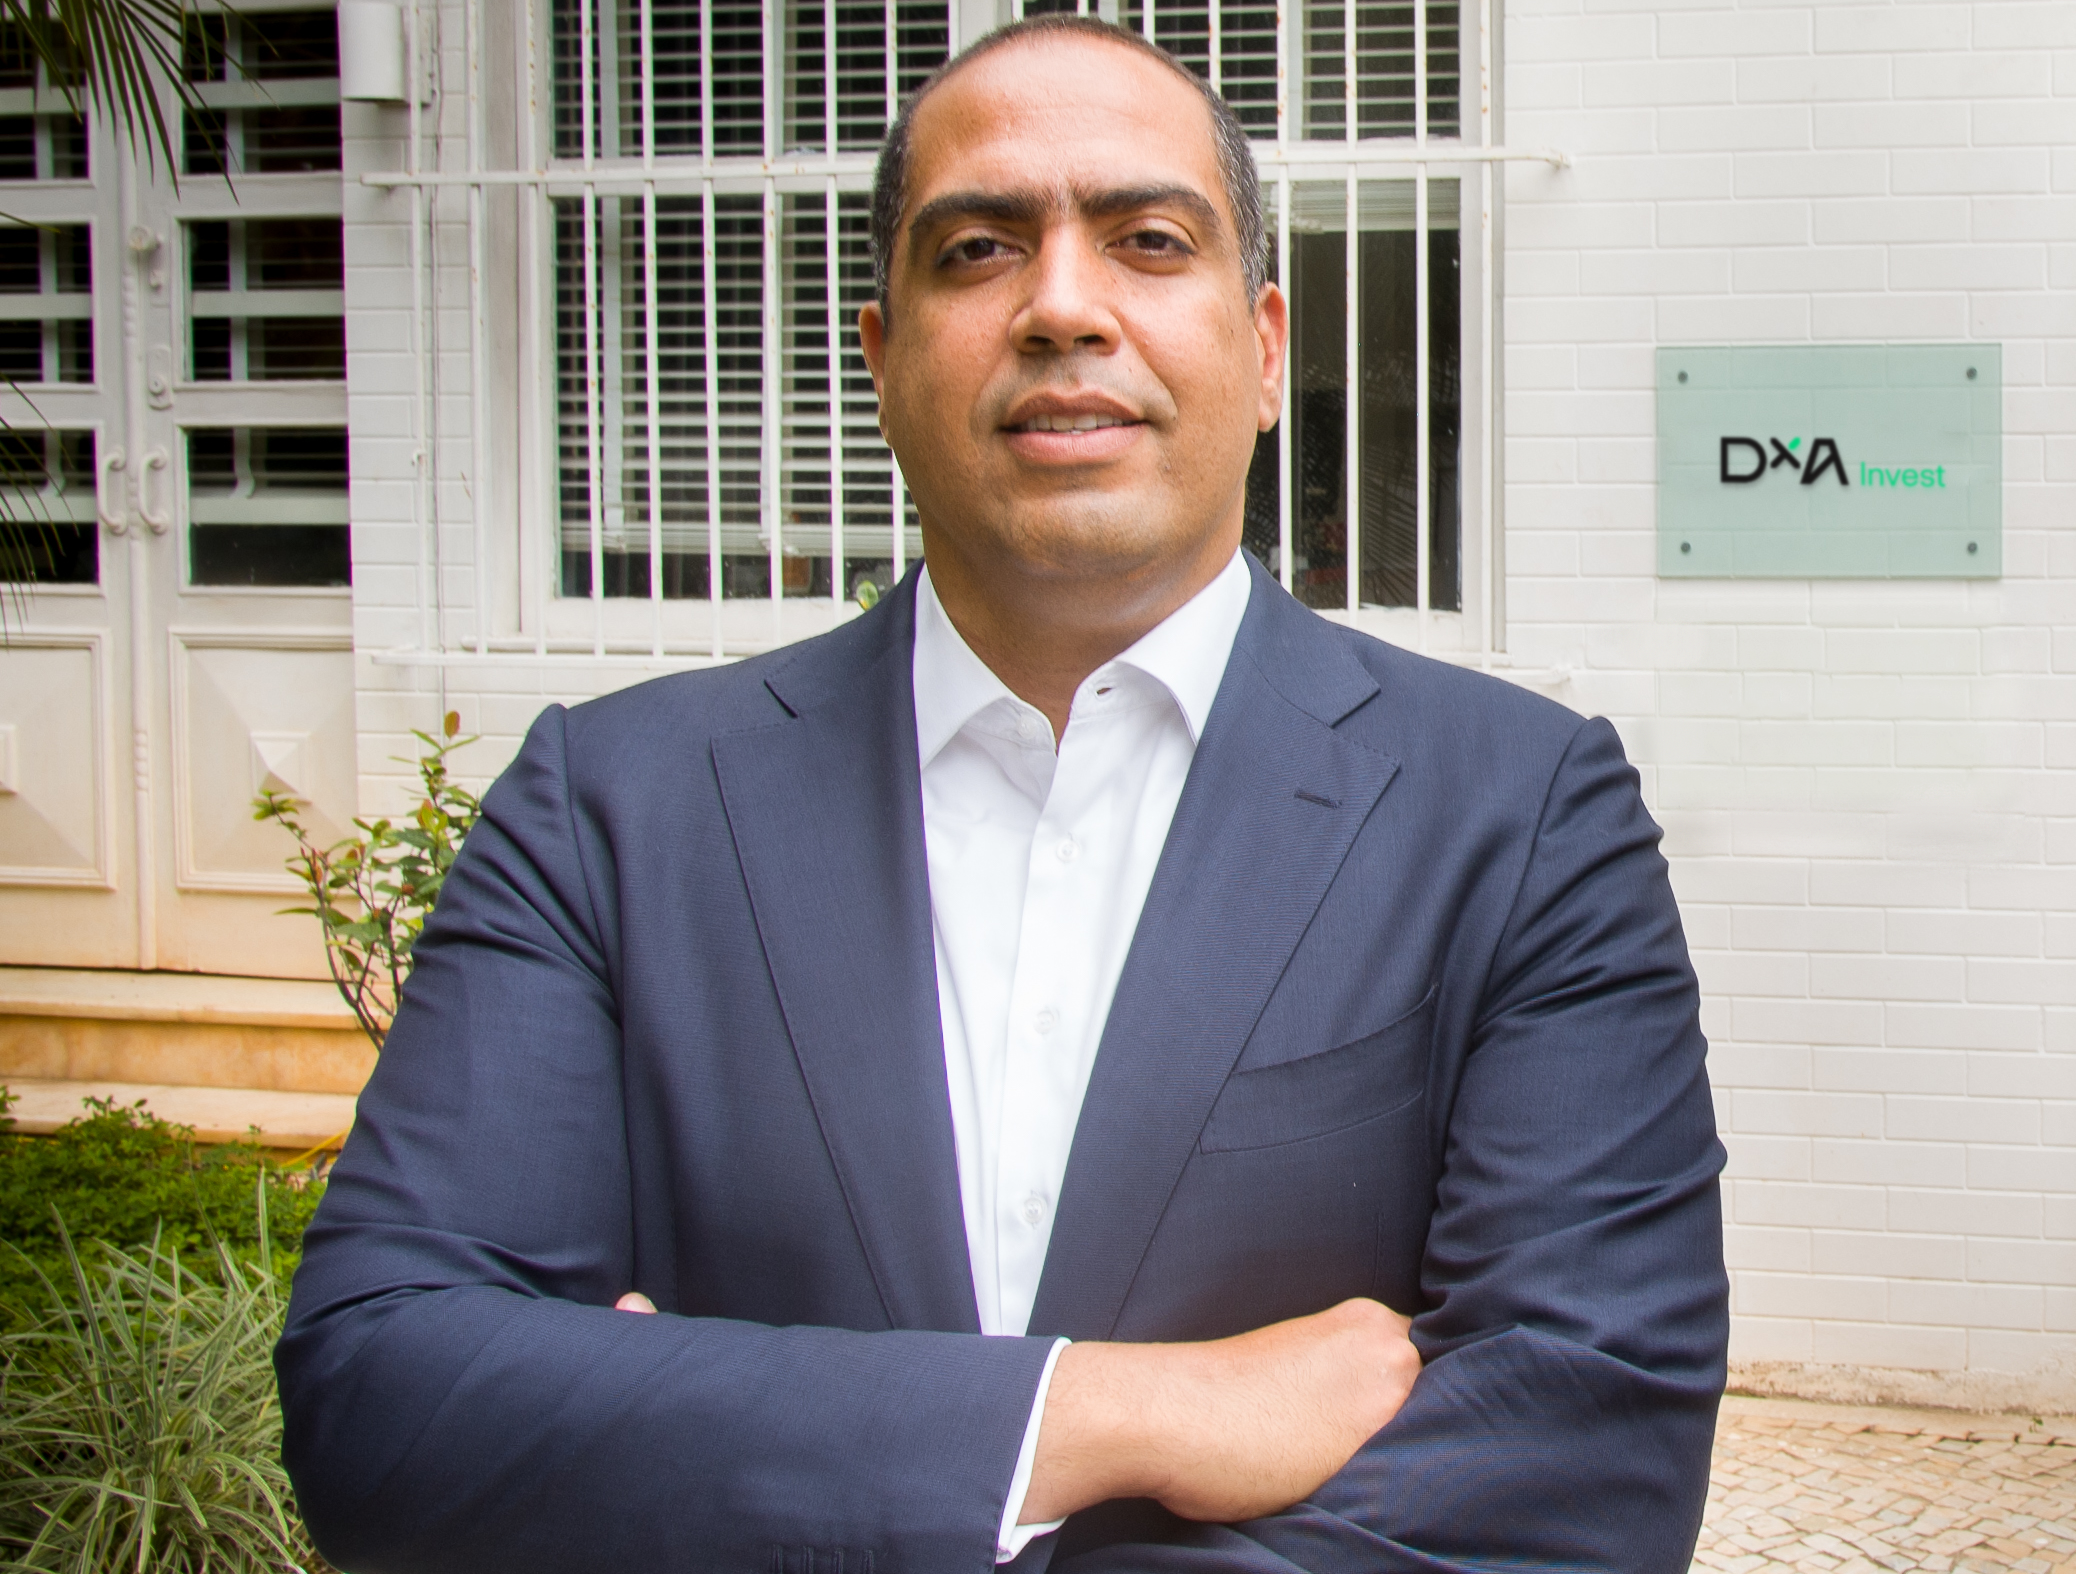 DXA Invest direciona investimento de R$ 20 milhões à Rizi Dental Center